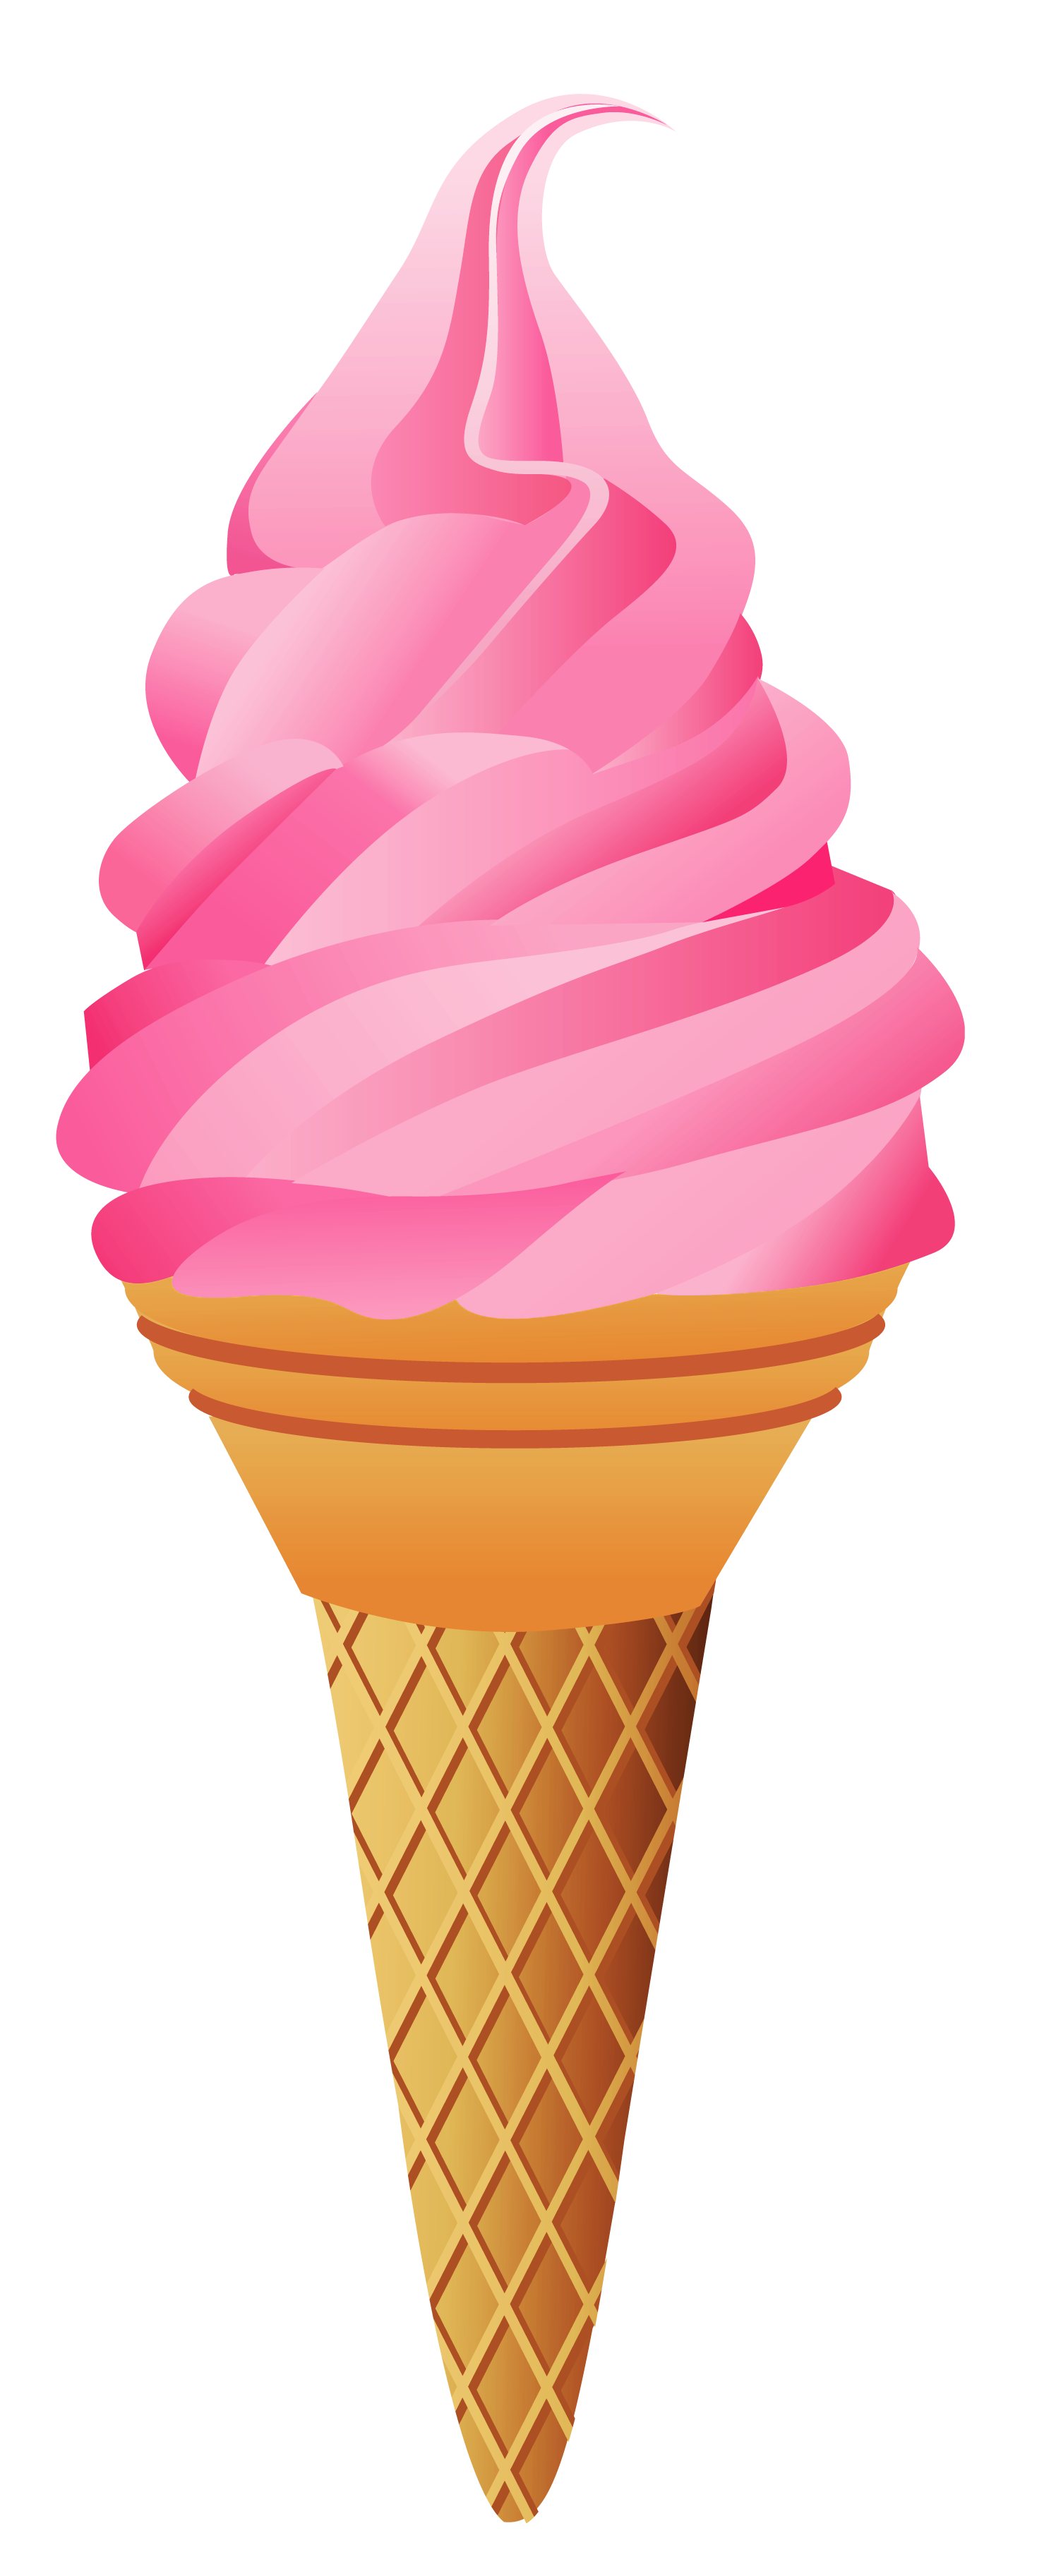 ice cream cone images clip art - photo #25